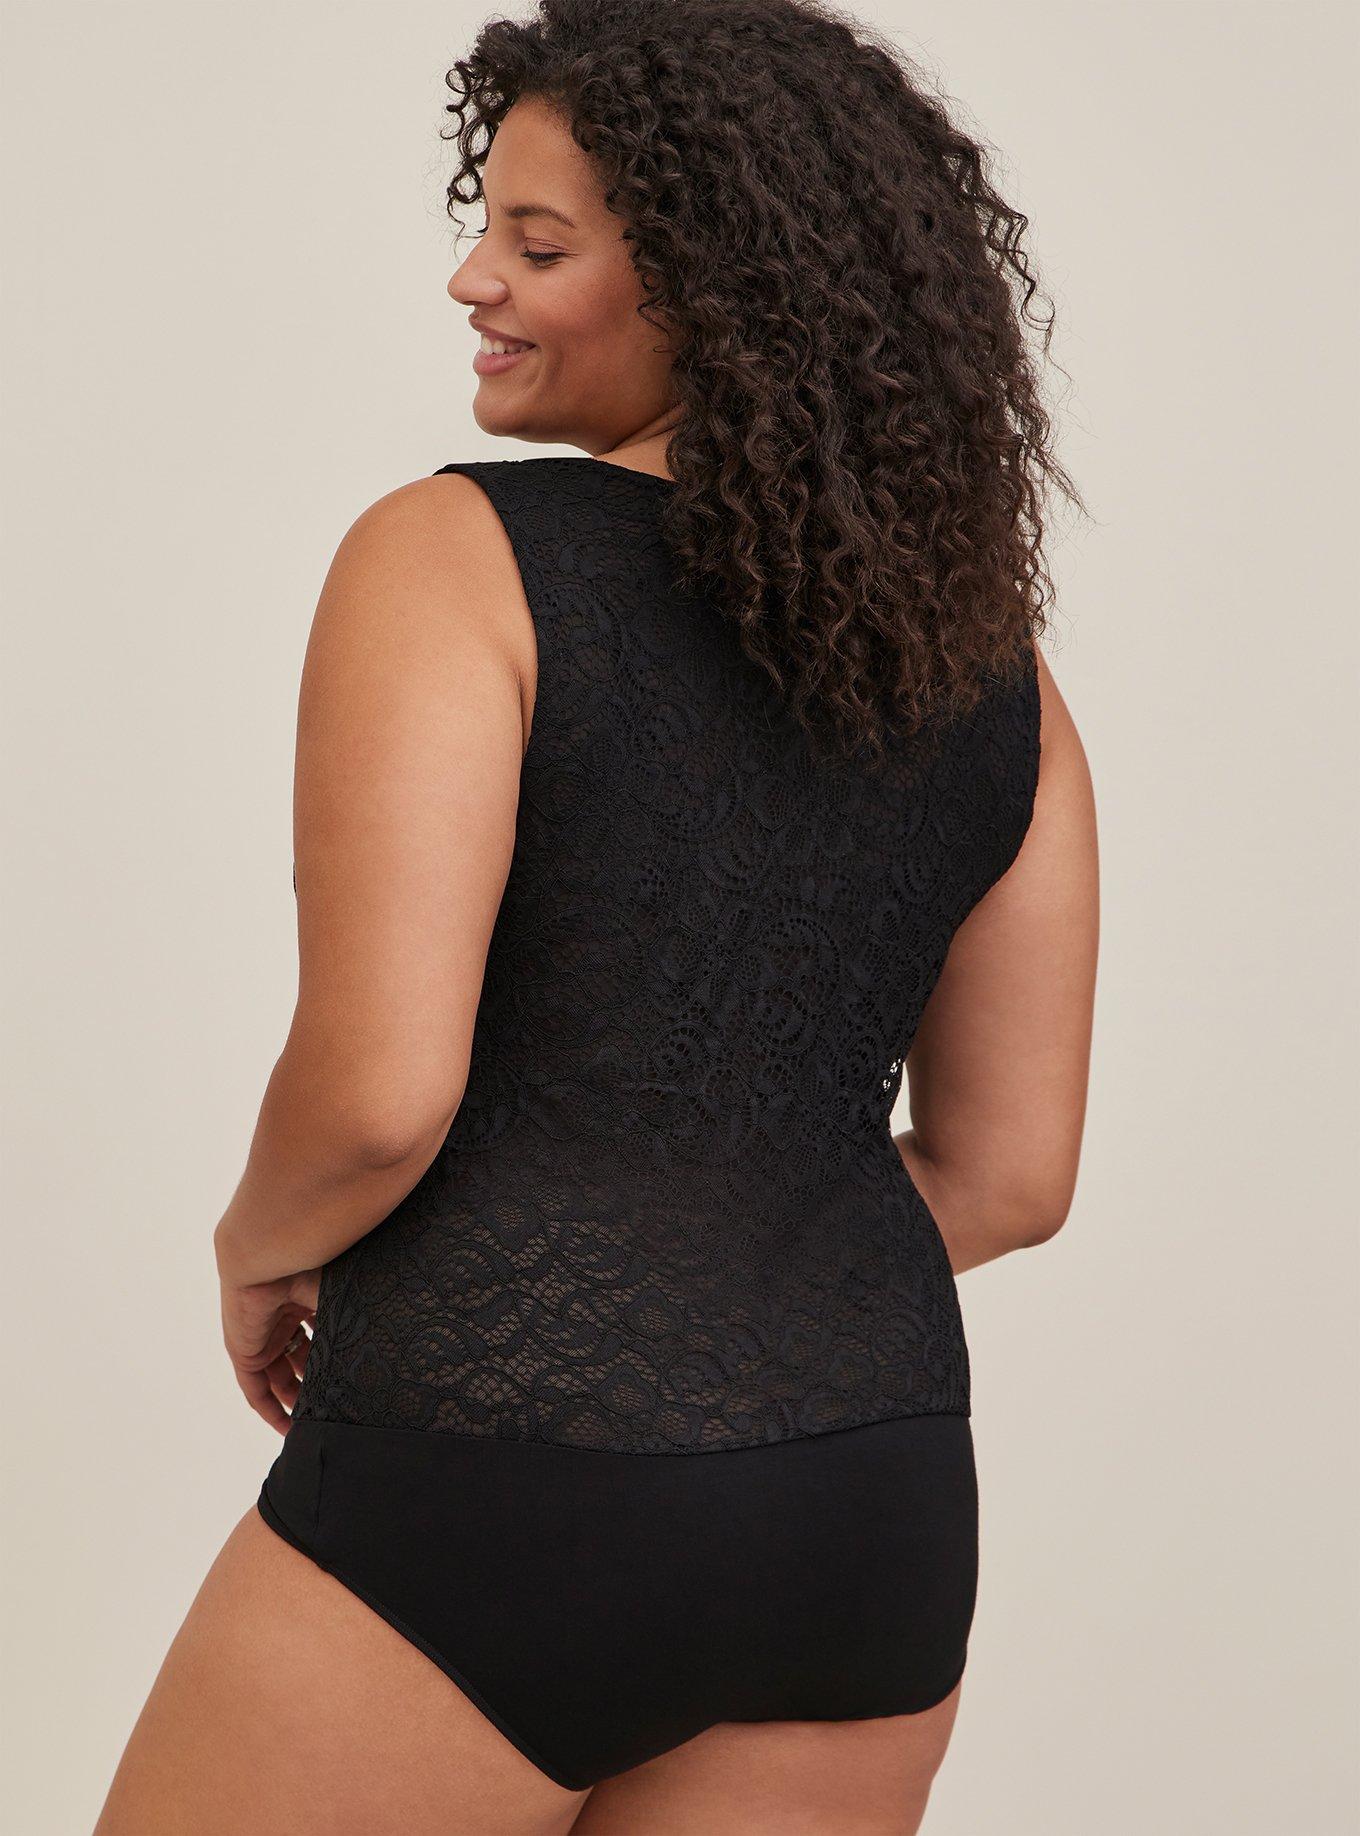 Plus Size - Super Soft Black Lace Bodysuit - Torrid